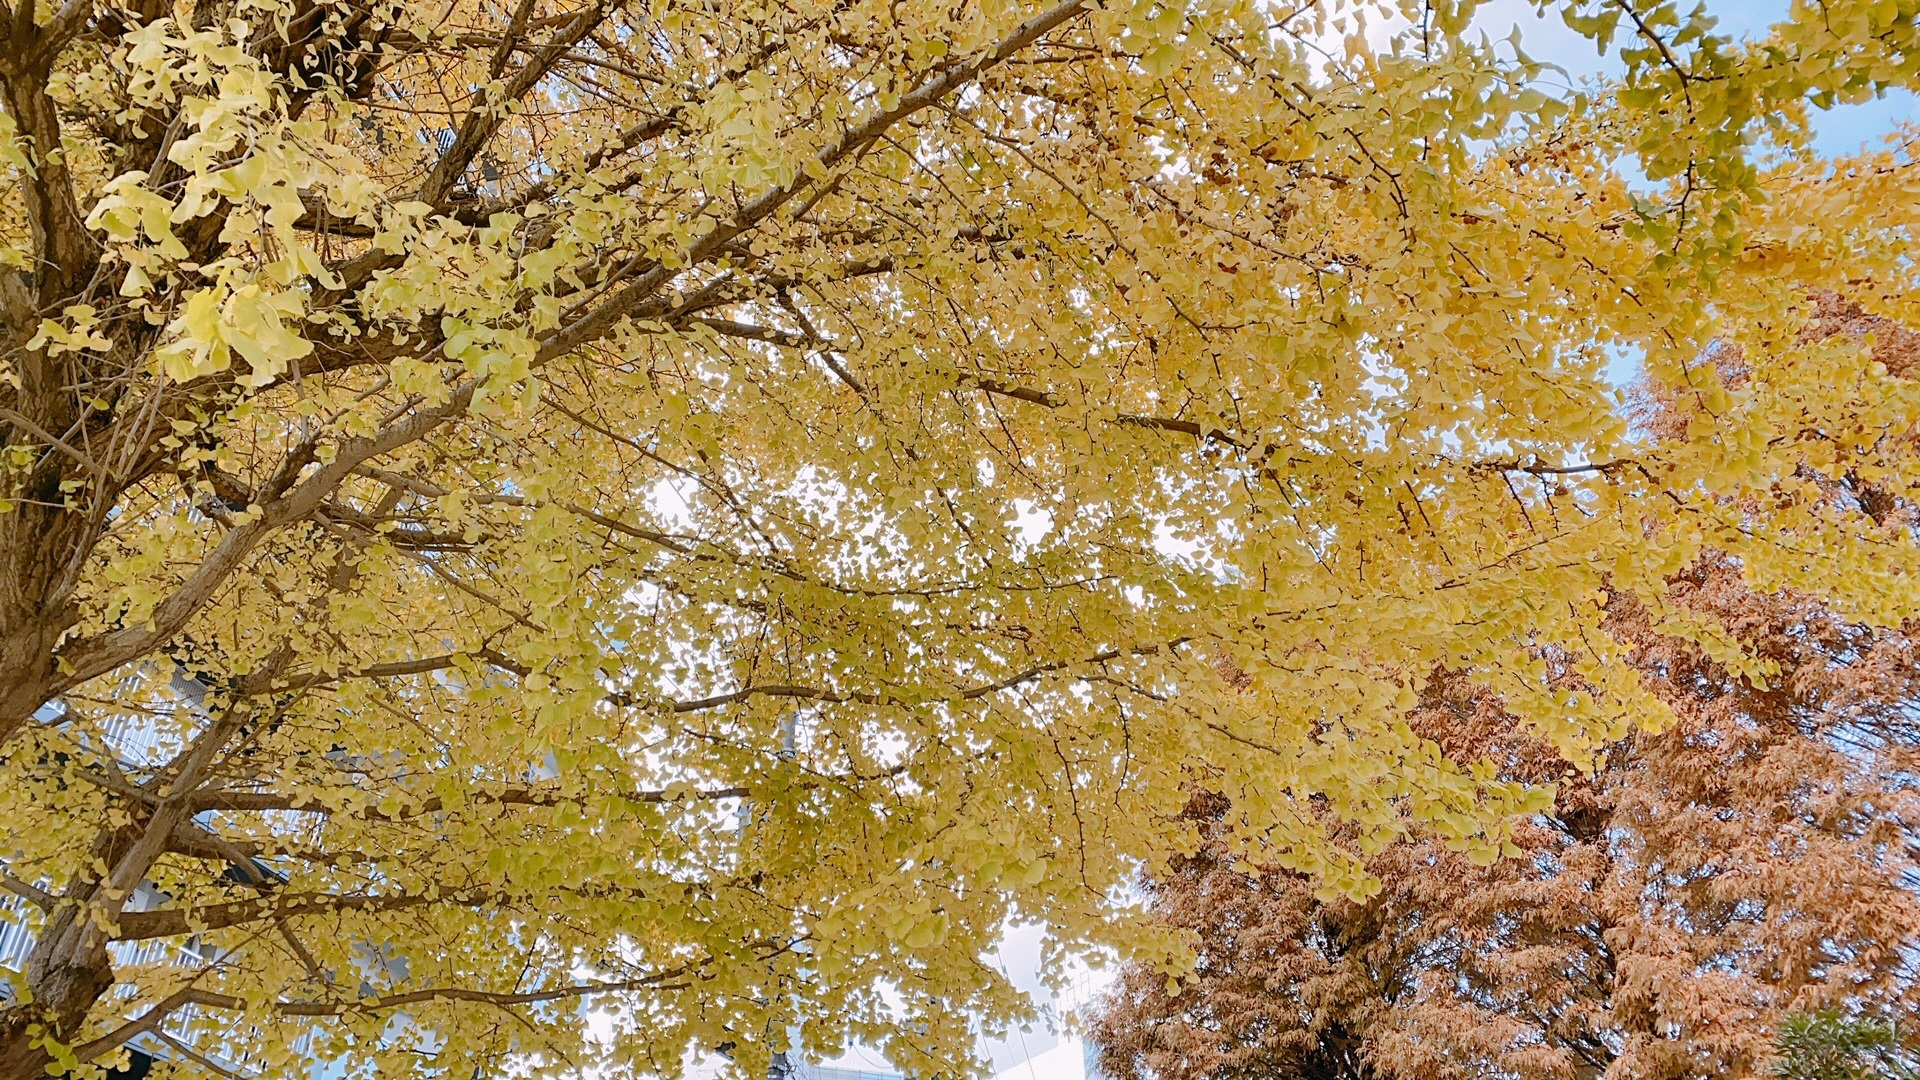 下から撮影された、空を覆いつくすような大手公園の大きな黄色いイチョウの木